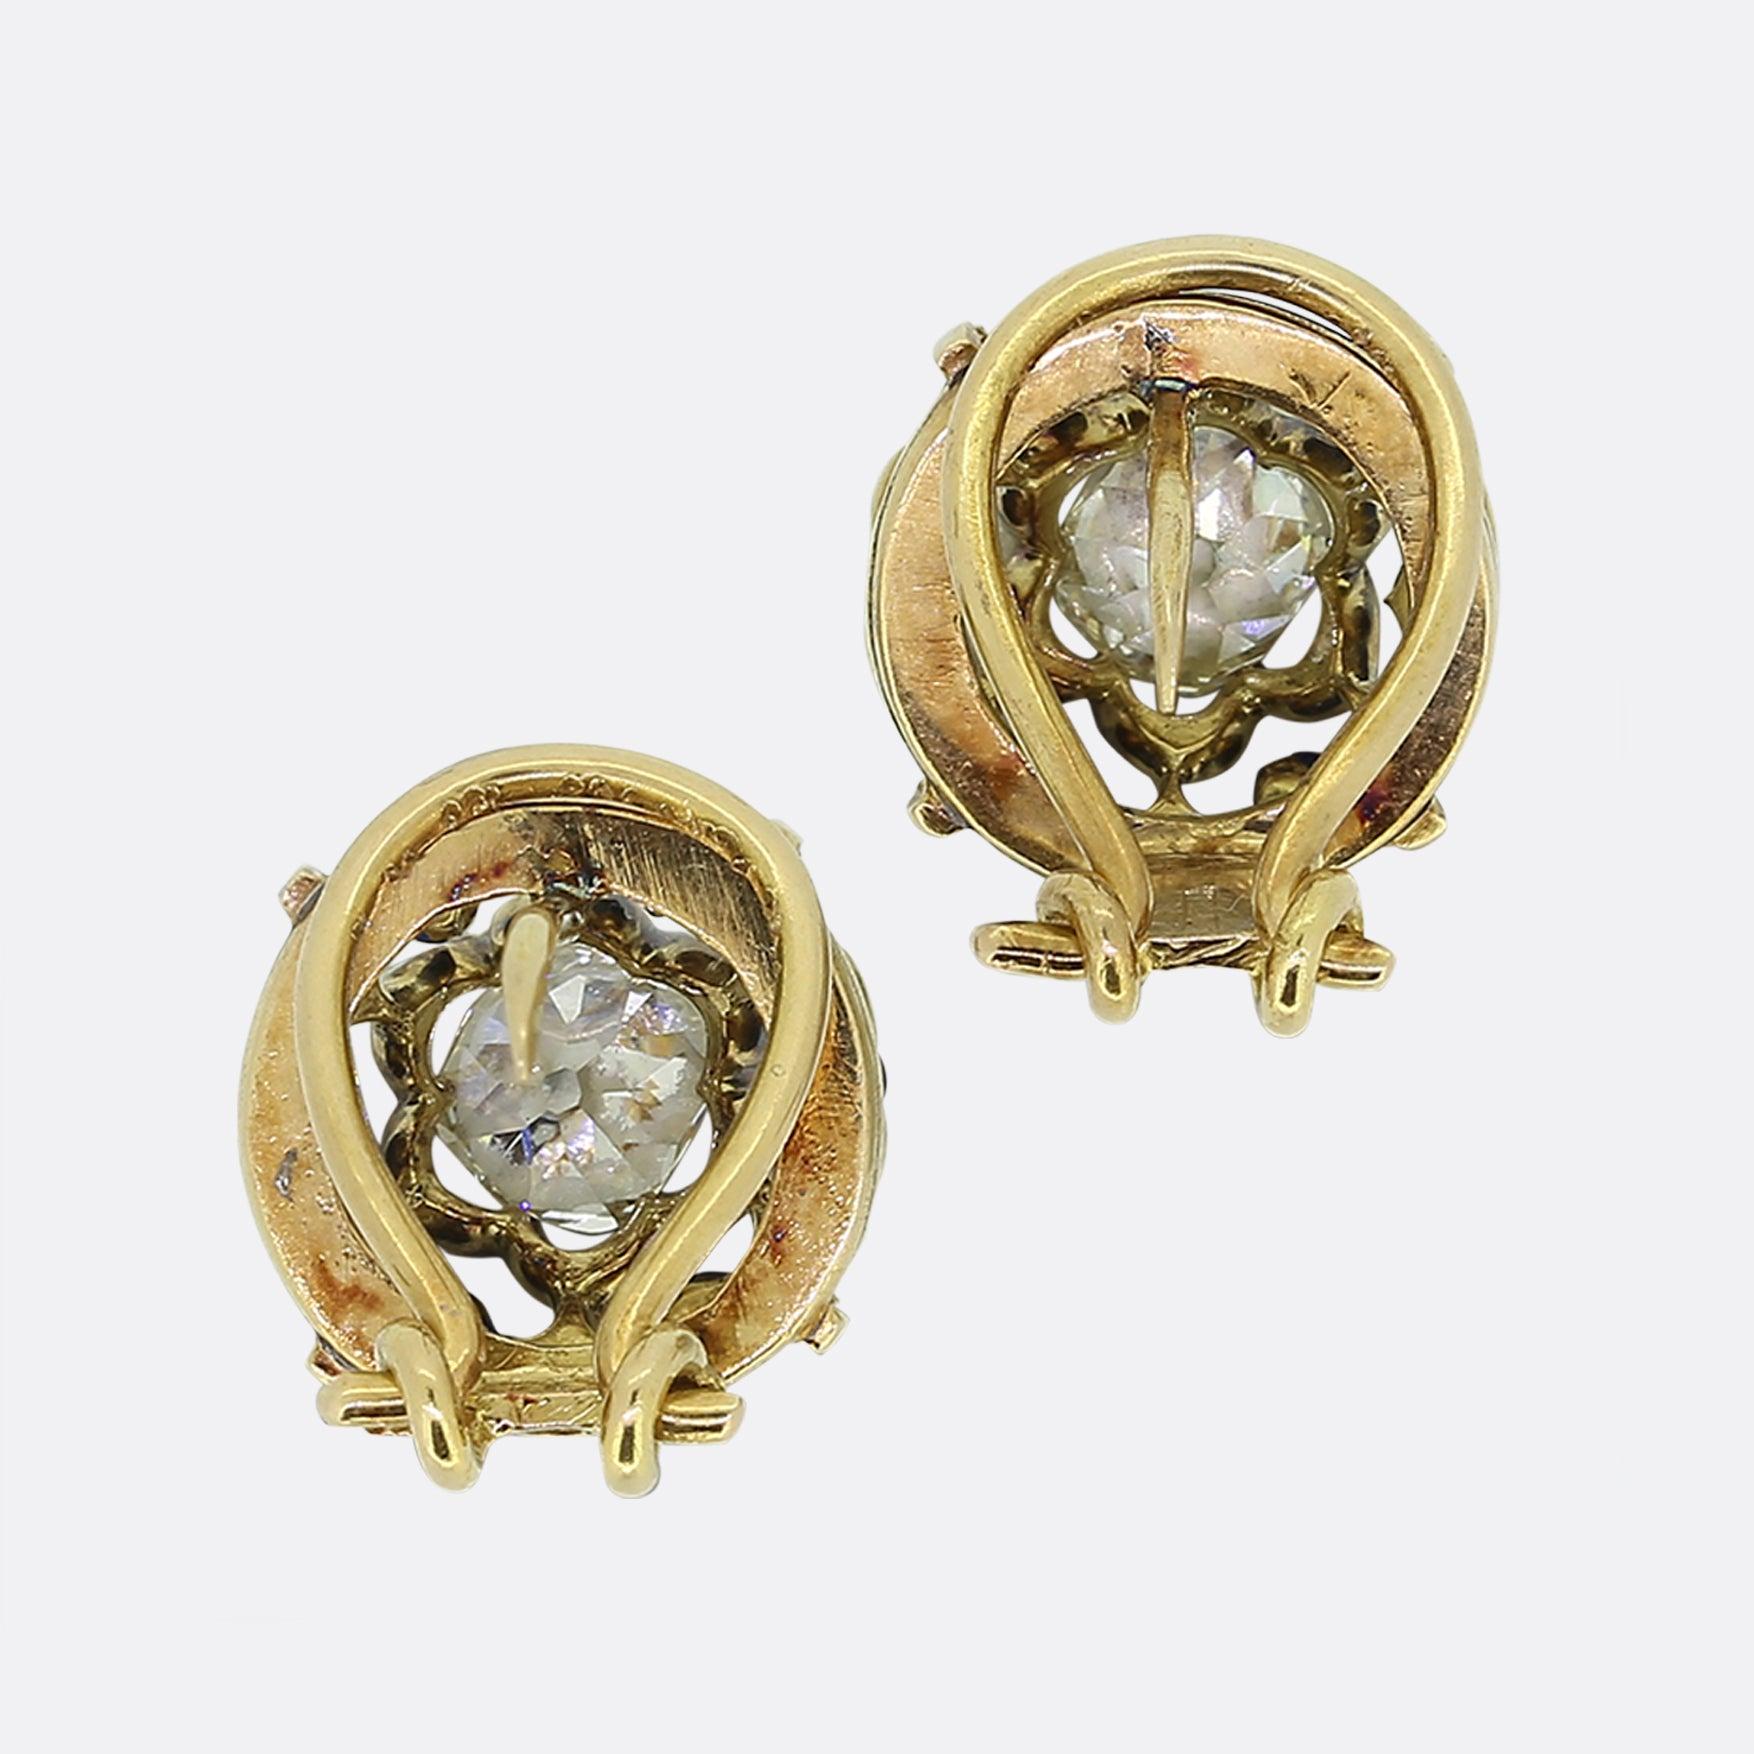 Hier haben wir ein entzückendes Paar Diamantohrringe aus der viktorianischen Ära. Jedes antike Stück ist identisch und präsentiert eine offene, wellenförmige Doppelzarge, die einen beeindruckenden, klobigen Diamanten mit altem Minenschliff umgibt.